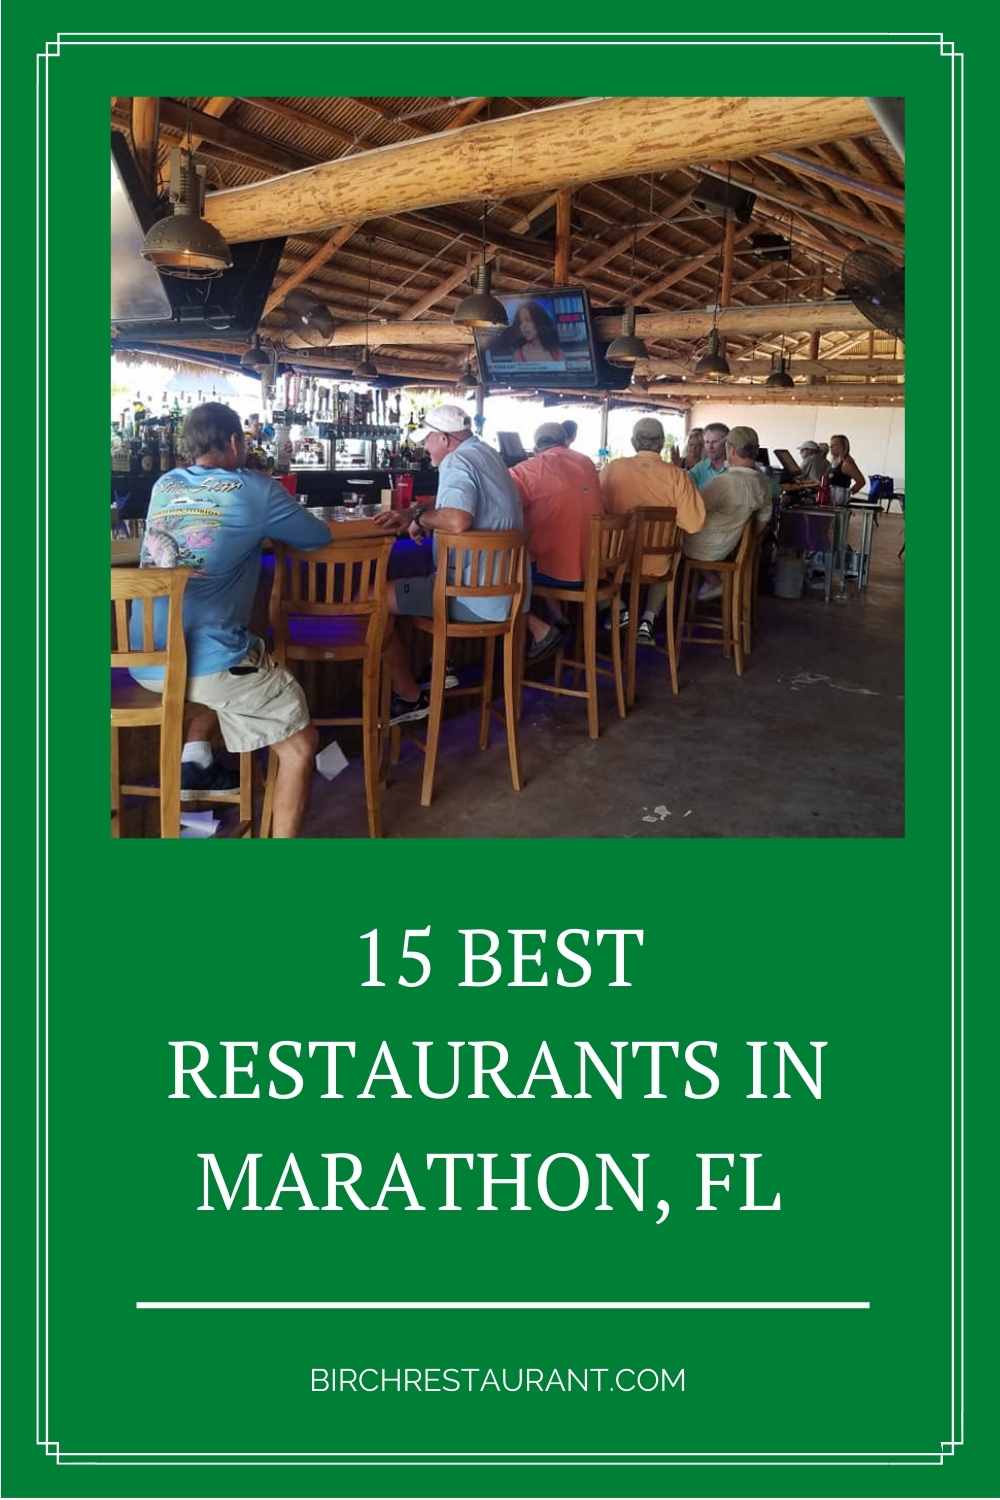 Best Restaurants in Marathon